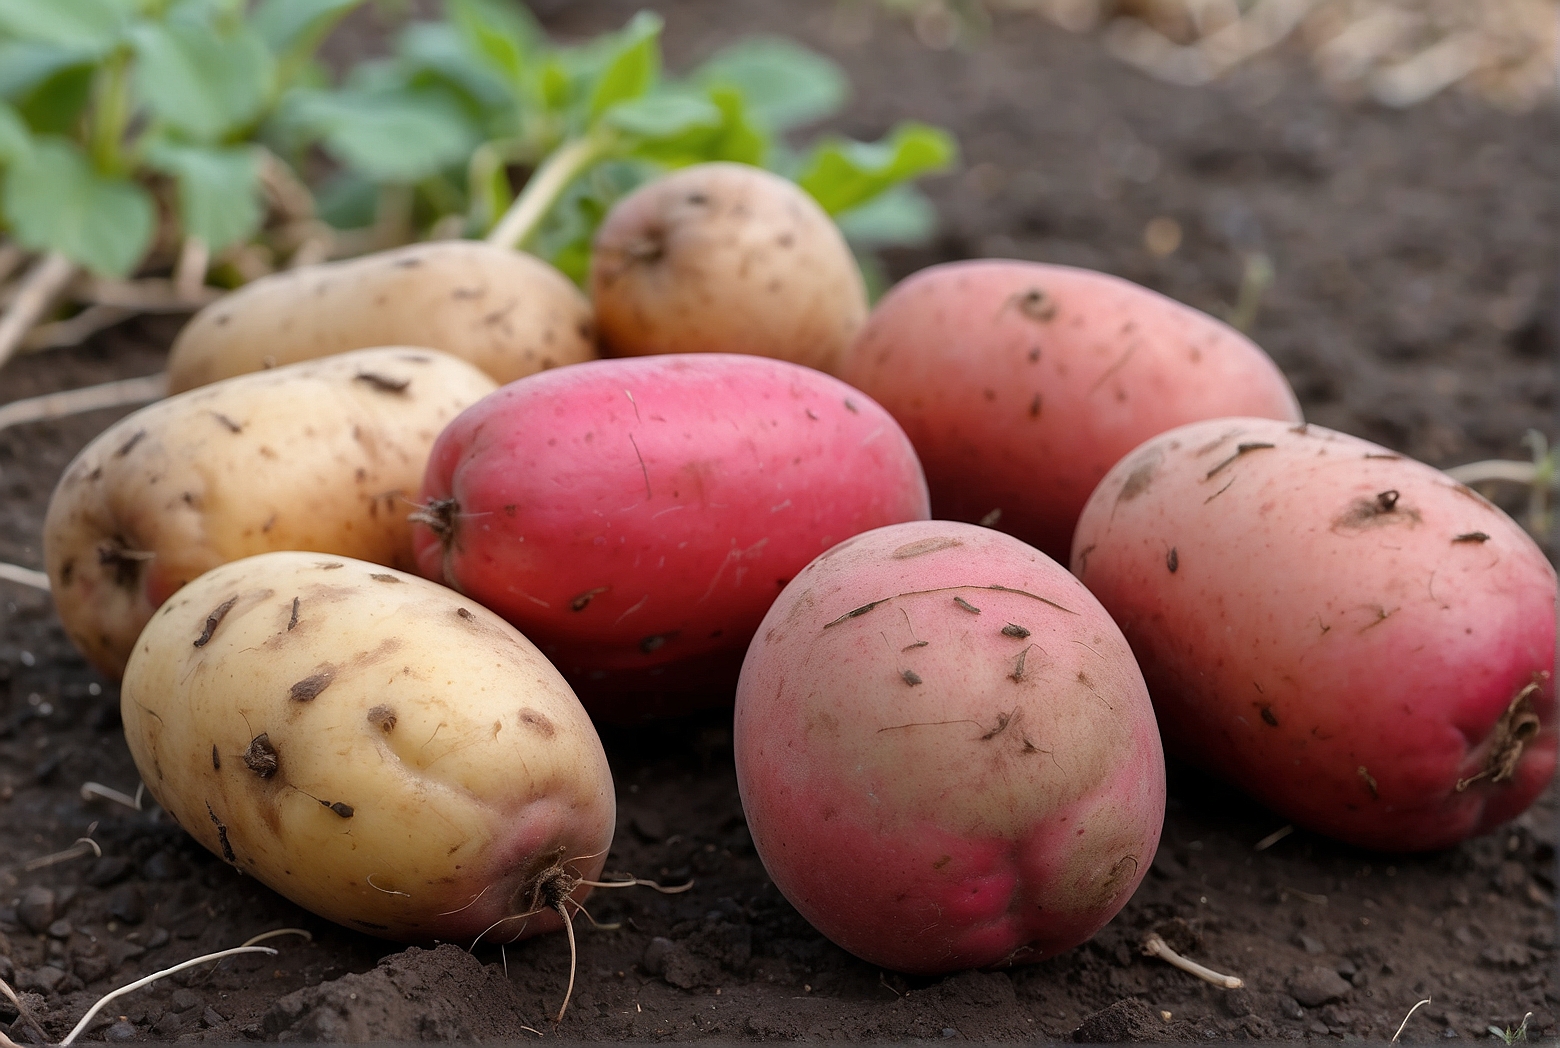 Default Growing Determinate Red Pontiac Seed Potatoes 0